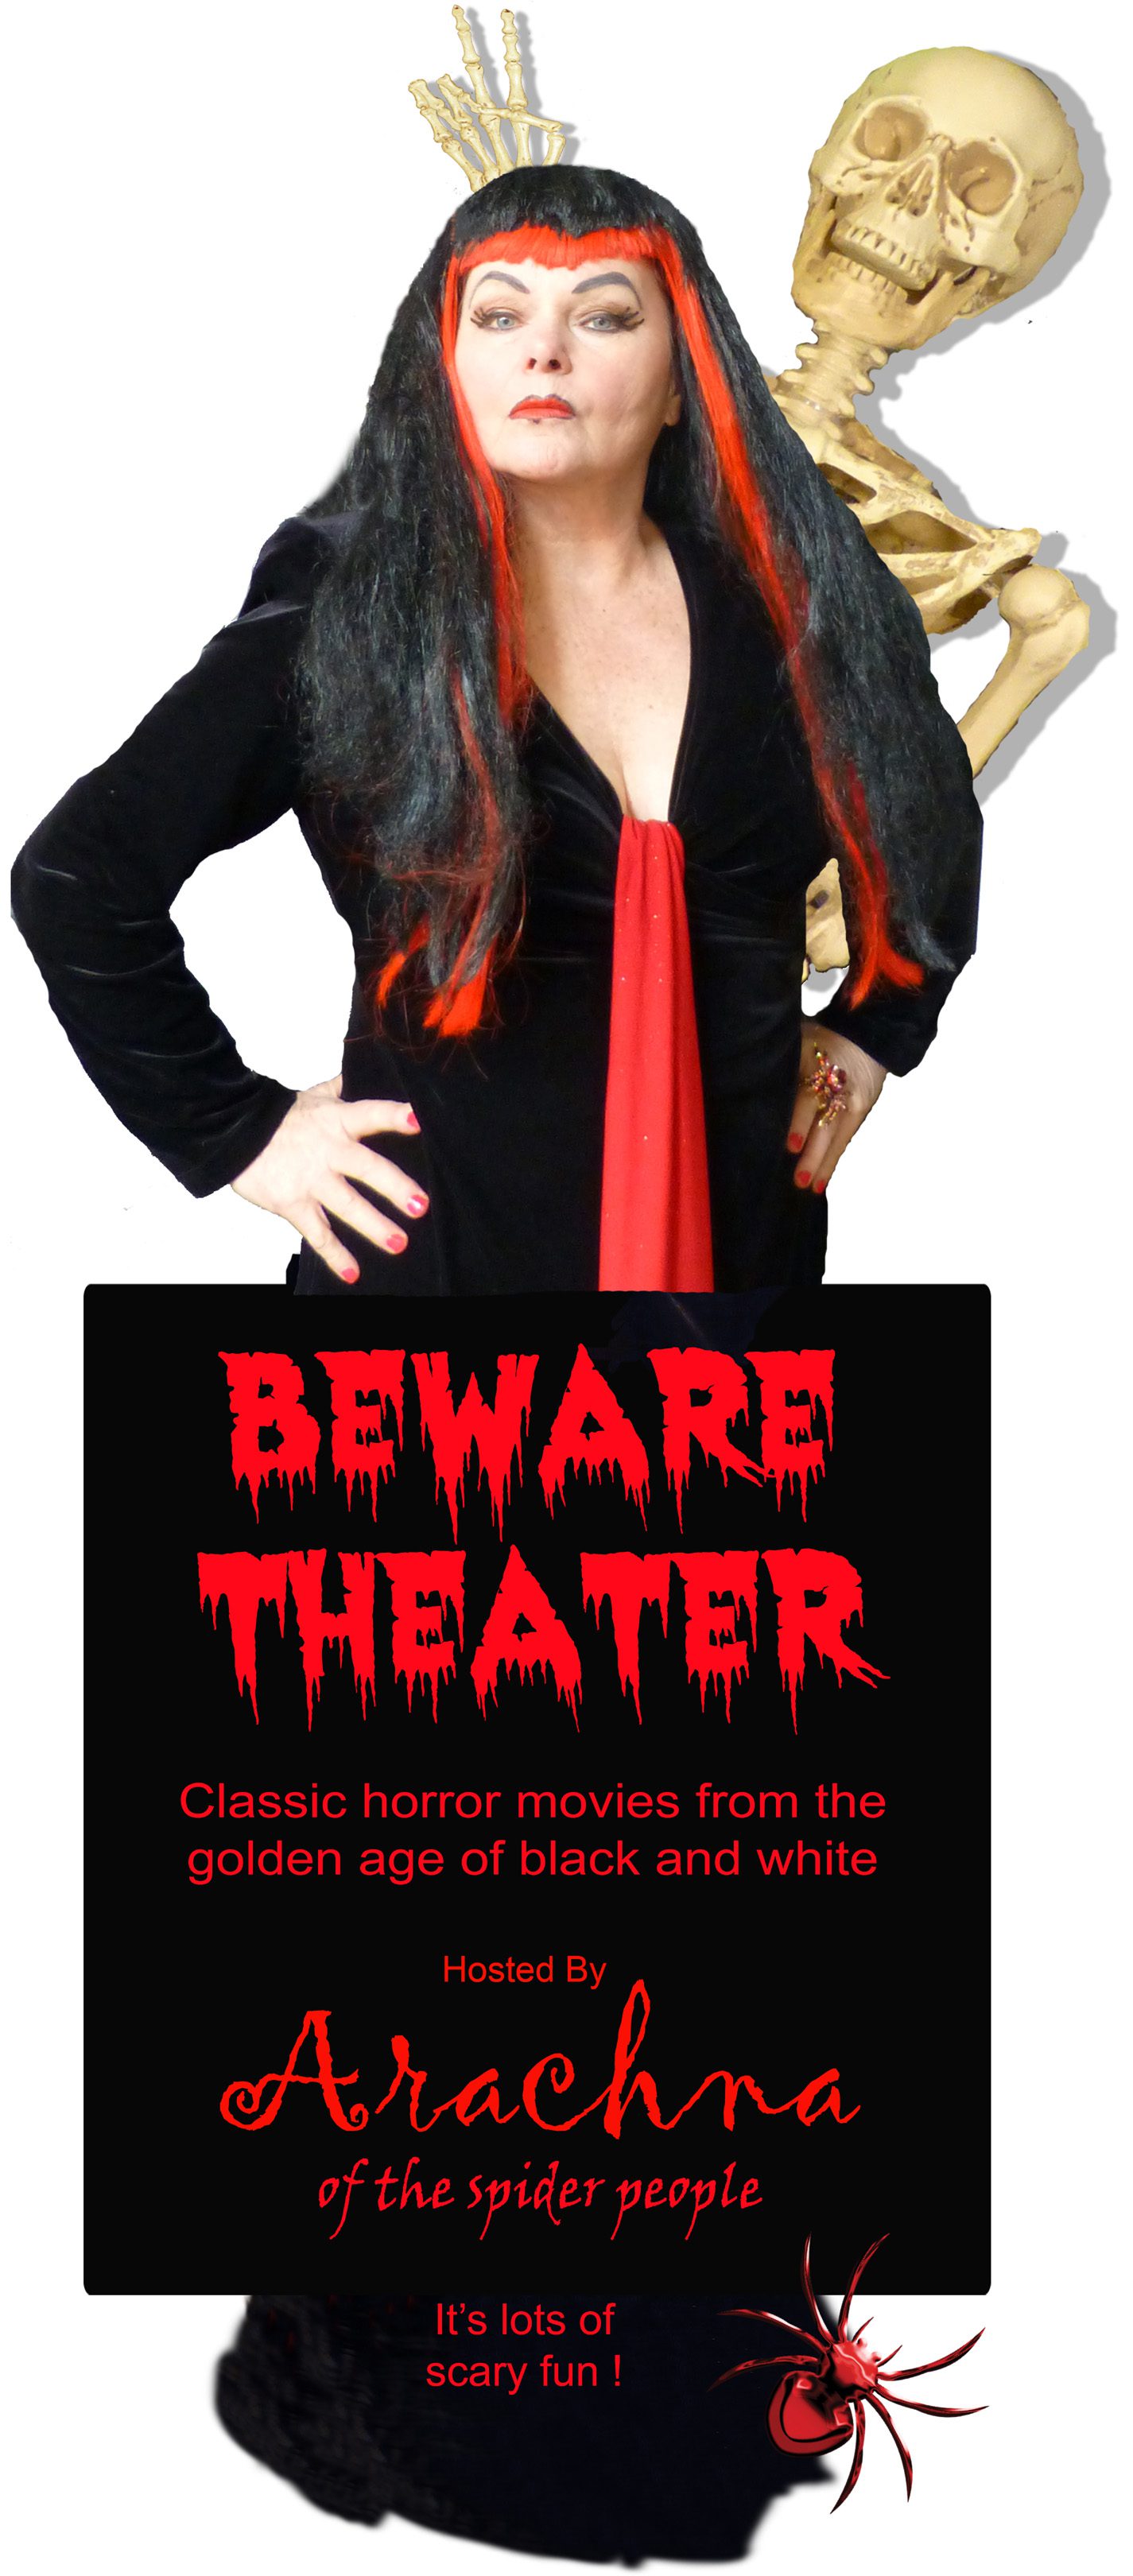 Beware Theater